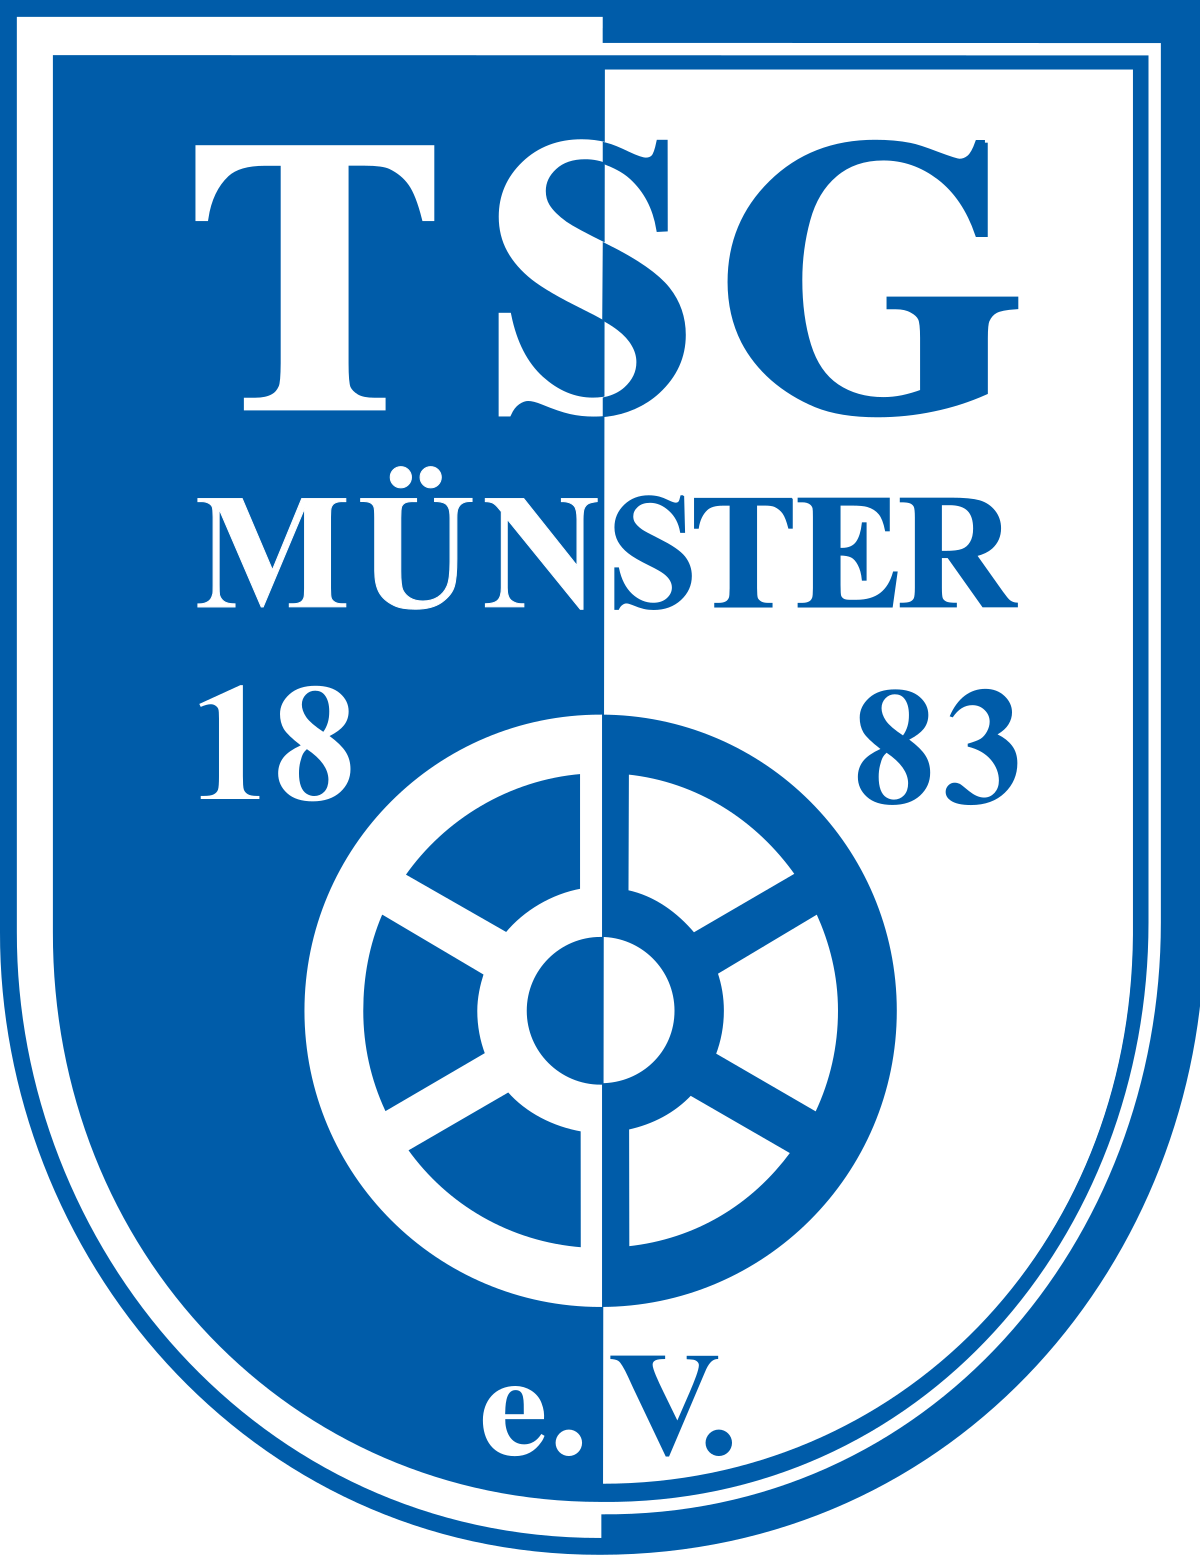 TSG Münster